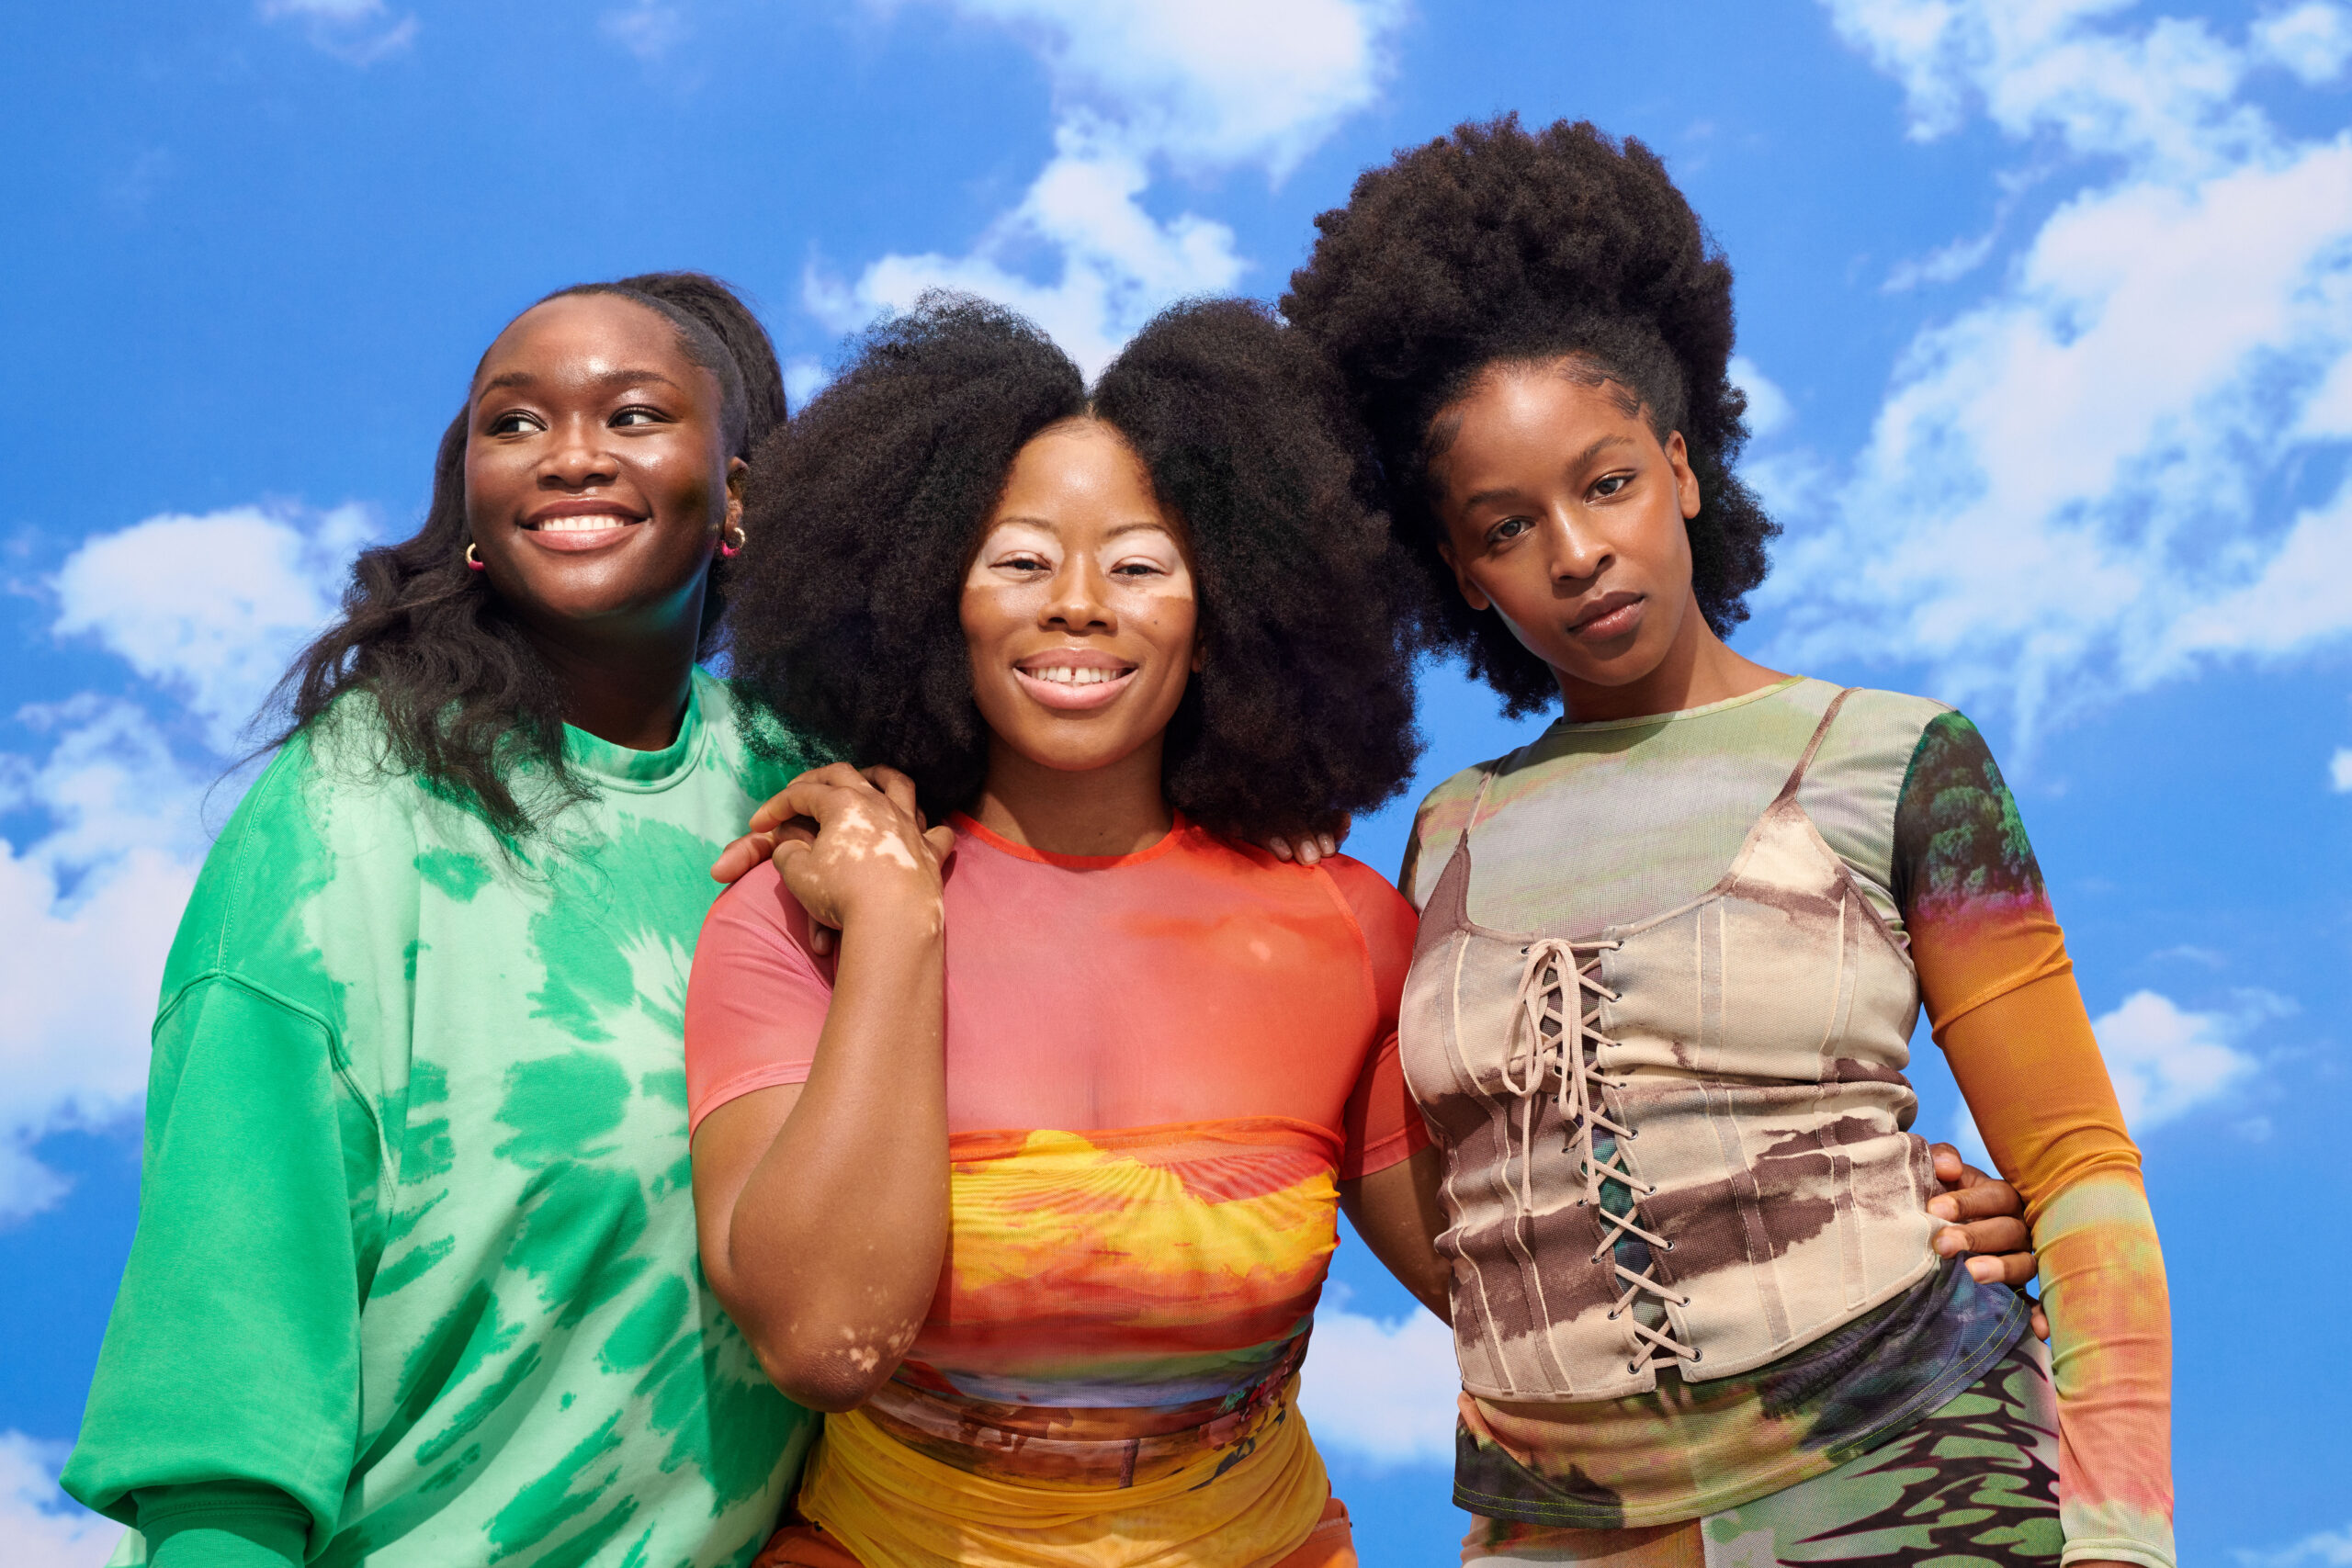 Ruka Hair: A successful hair brand built by 2 Black Women